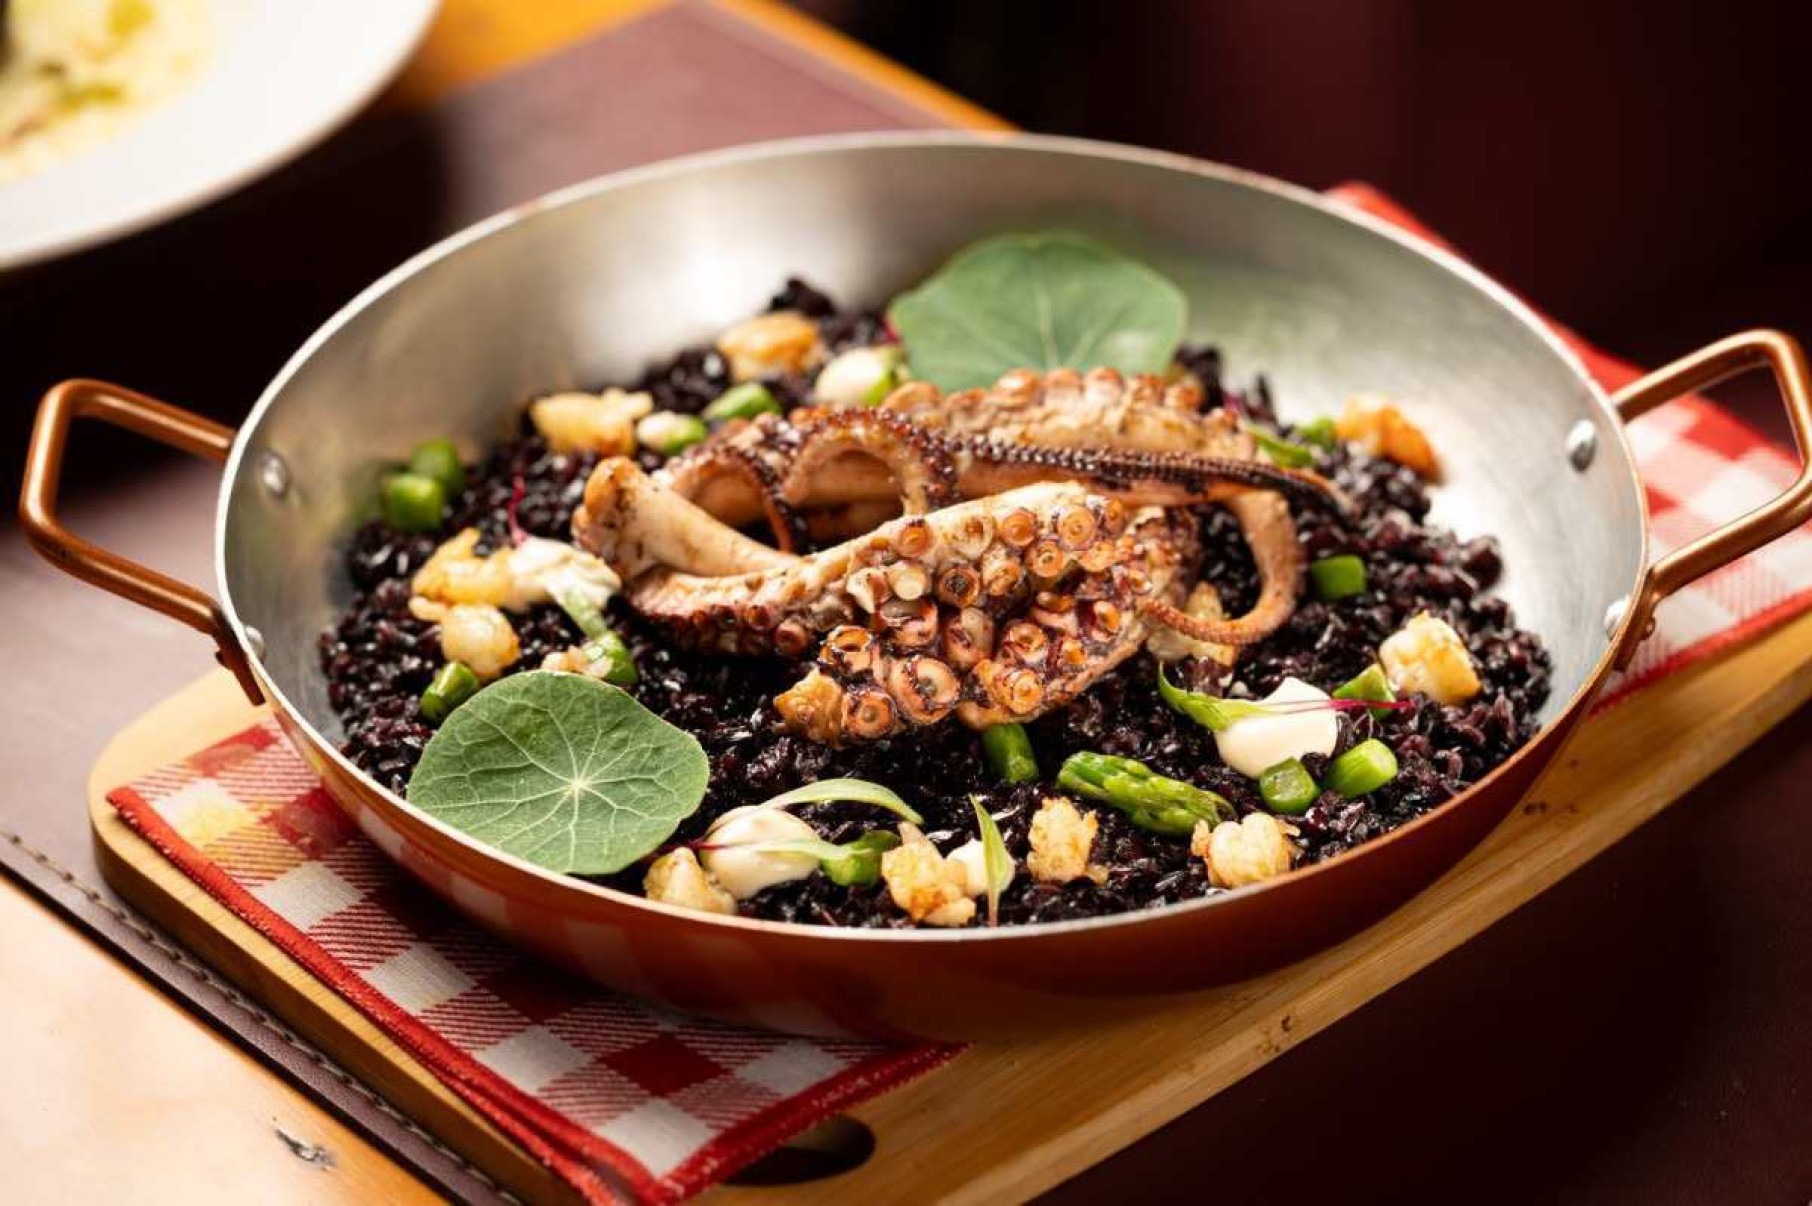 Polvo assado na grelha com arroz negro, aspargos, emulsão de endro e camarões é um dos novos pratos do menu de inverno